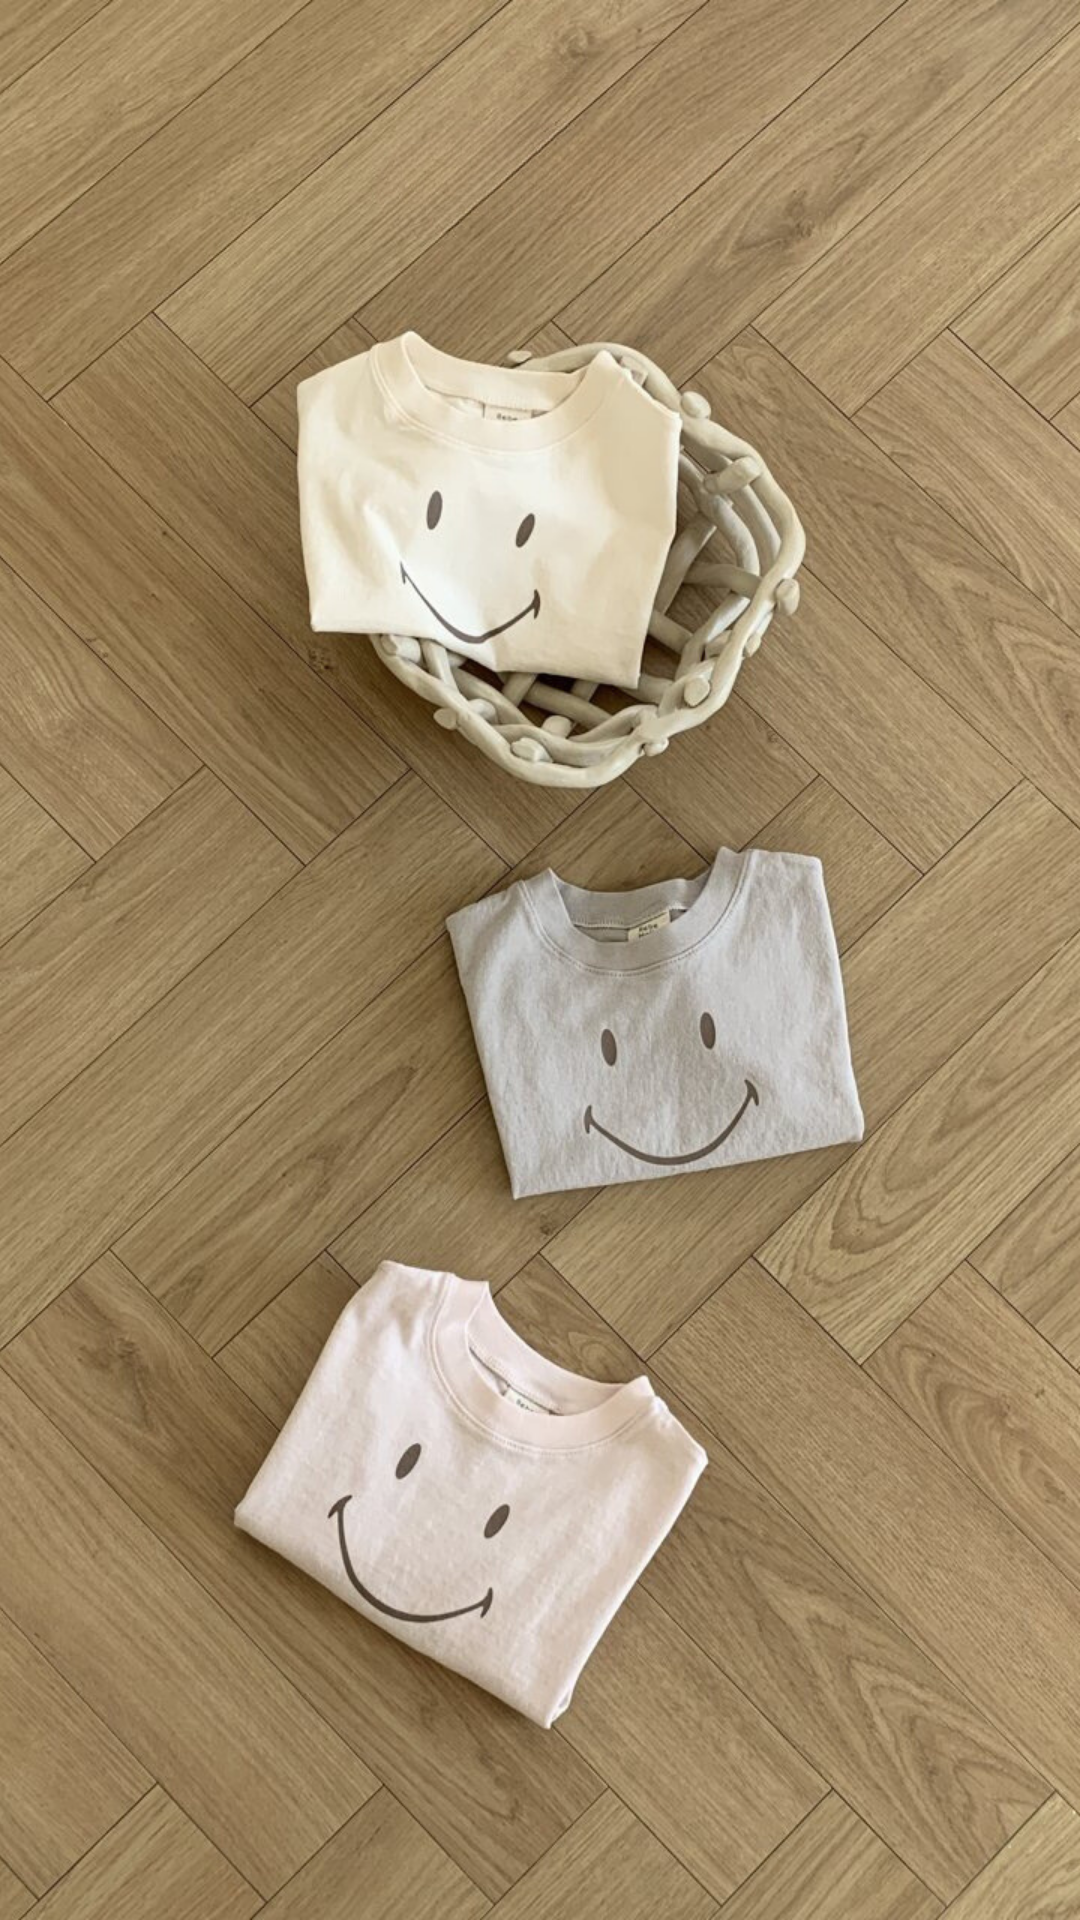 Drei gefaltete Bebe Holic Smile Tees aus weicher Baumwolle mit Smileys darauf sind auf einem Holzboden angeordnet. Zwei T-Shirts liegen direkt auf dem Boden, während eines in einem geflochtenen Korb liegt. Die T-Shirts sind in hellen Creme-, Grau- und Rosatönen gehalten.